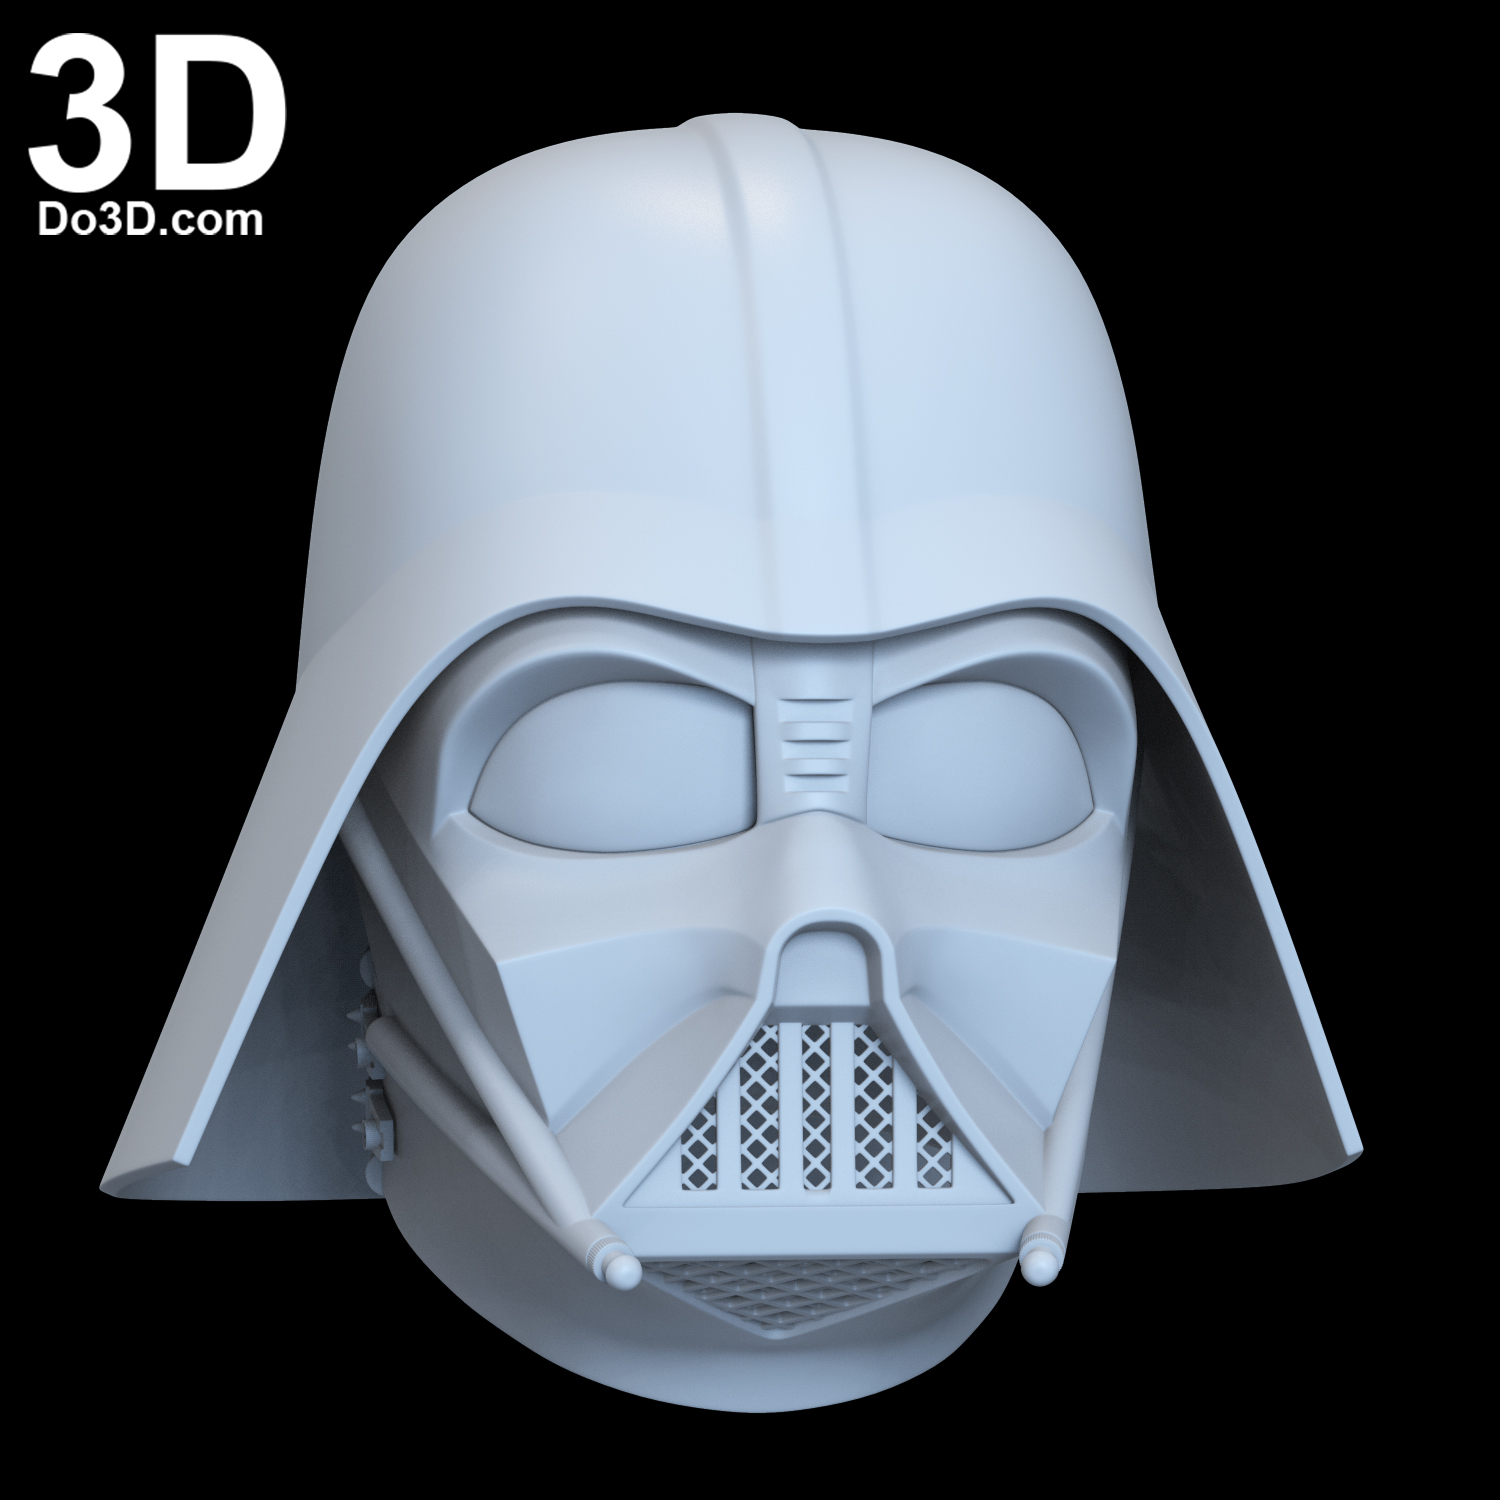 rookie Morgenøvelser Seaboard 3D Printable Model: Darth Vader Star Wars Helmet with Dome and Neck Strap |  Print File Format: STL – Do3D Portfolio